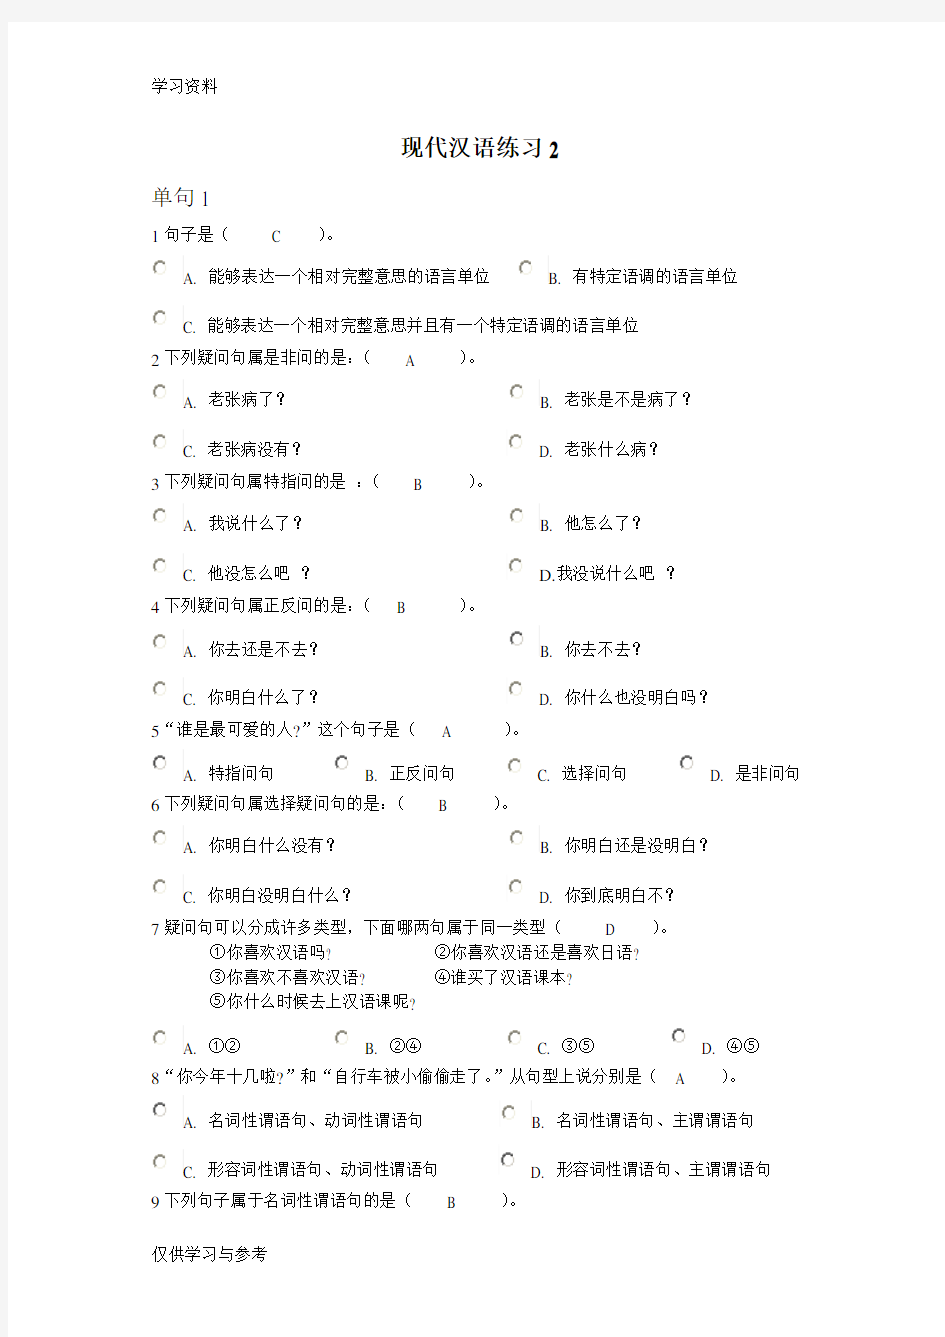 现代汉语练习2复习过程